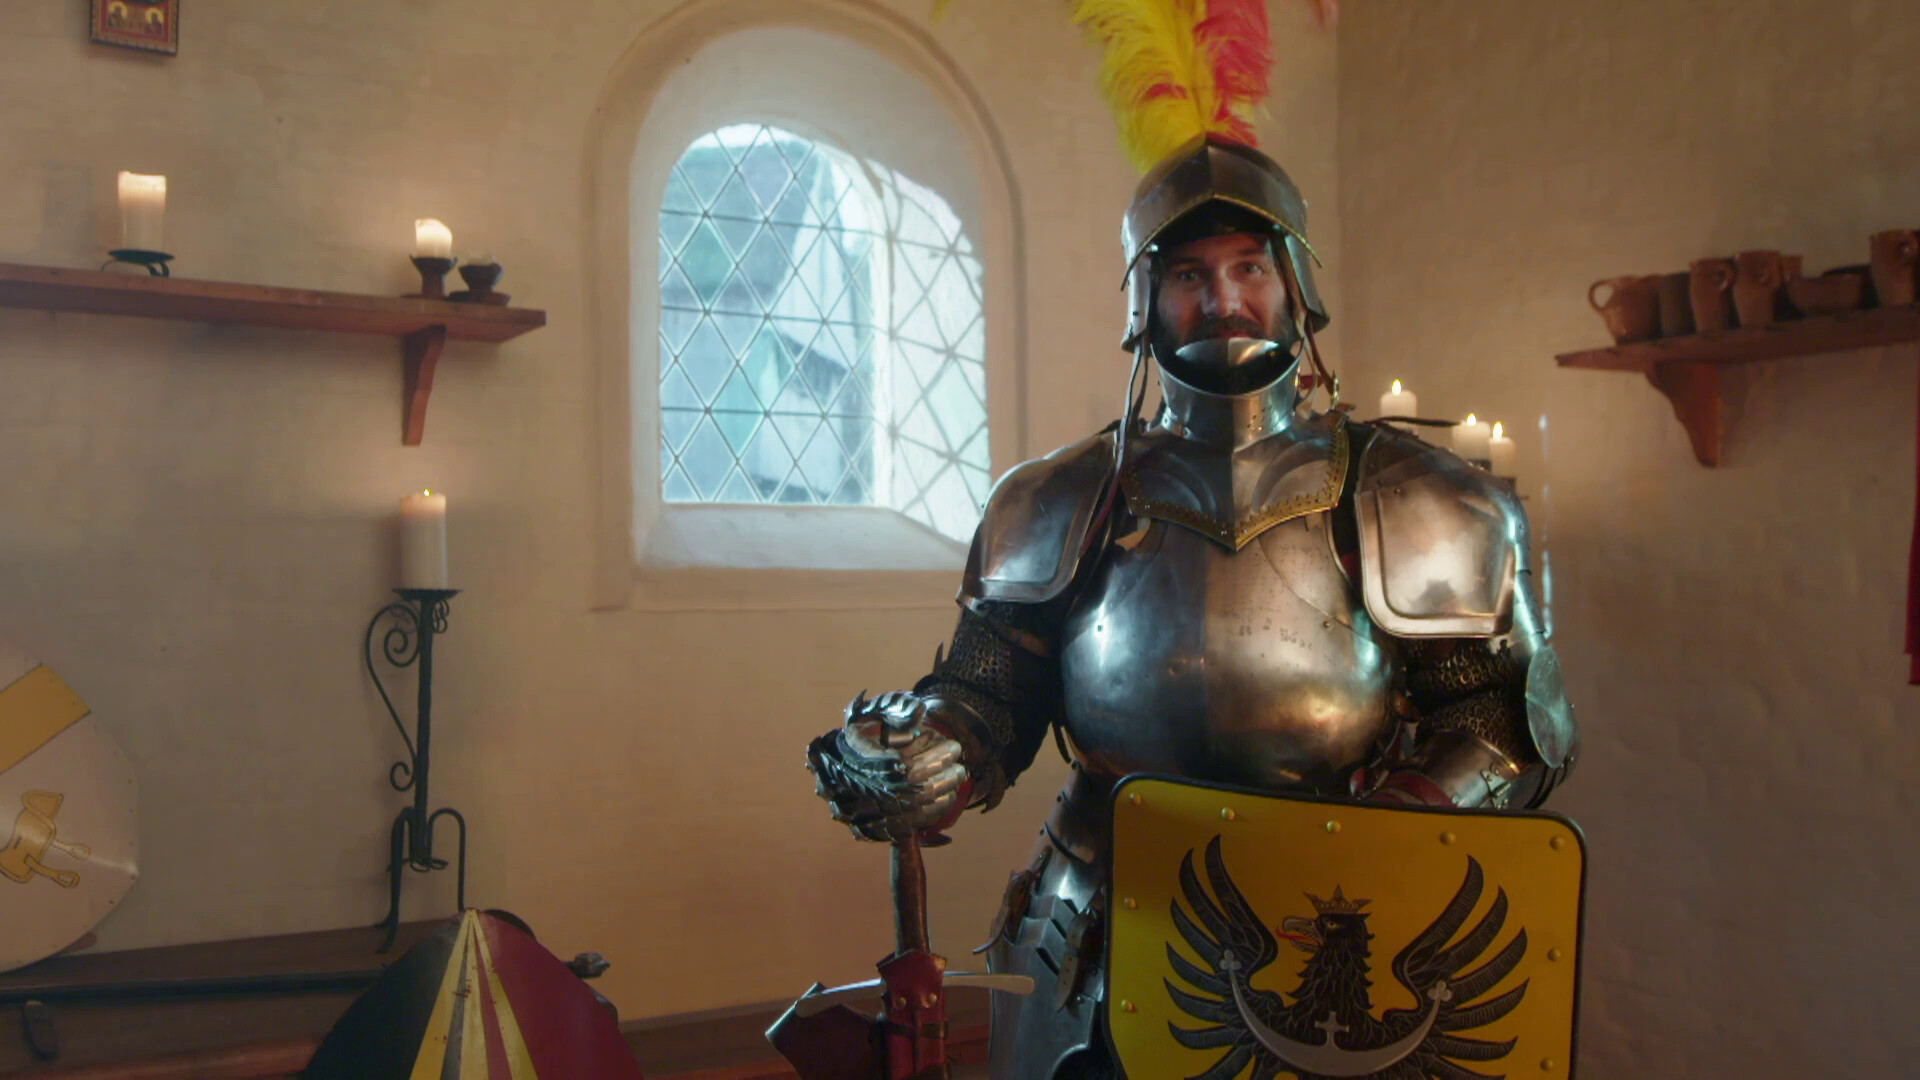 Likken Fictief wijs Schooltv: Hoe zag de kleding van ridders eruit? - In het harnas